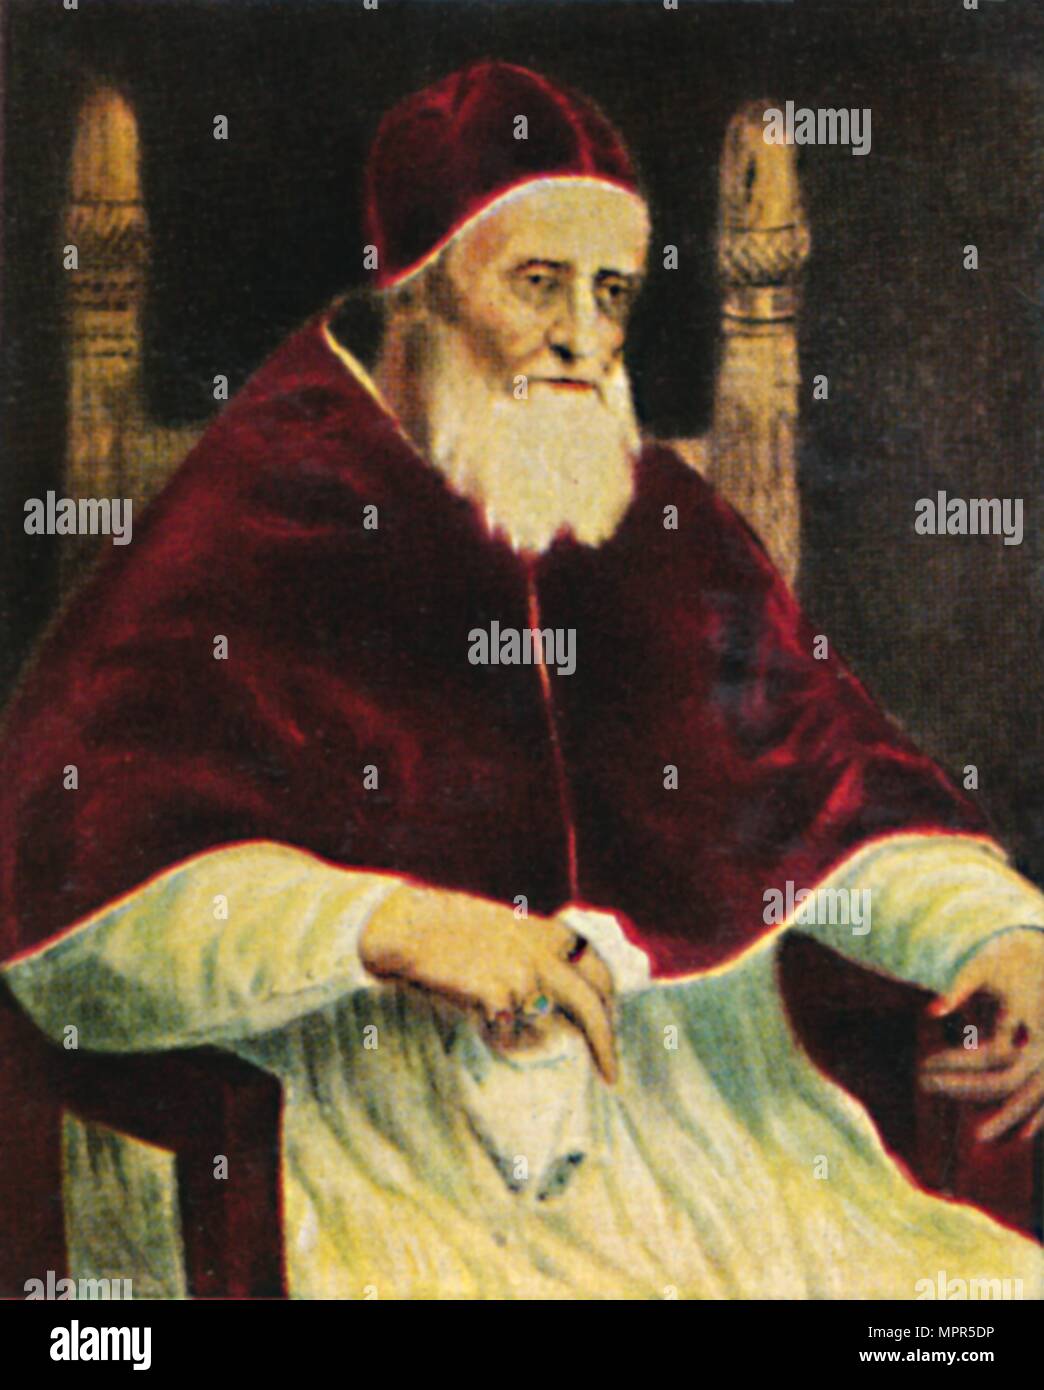 'Papst Julus II. 1443-1513', 1934. Artist: Unknown. Stock Photo